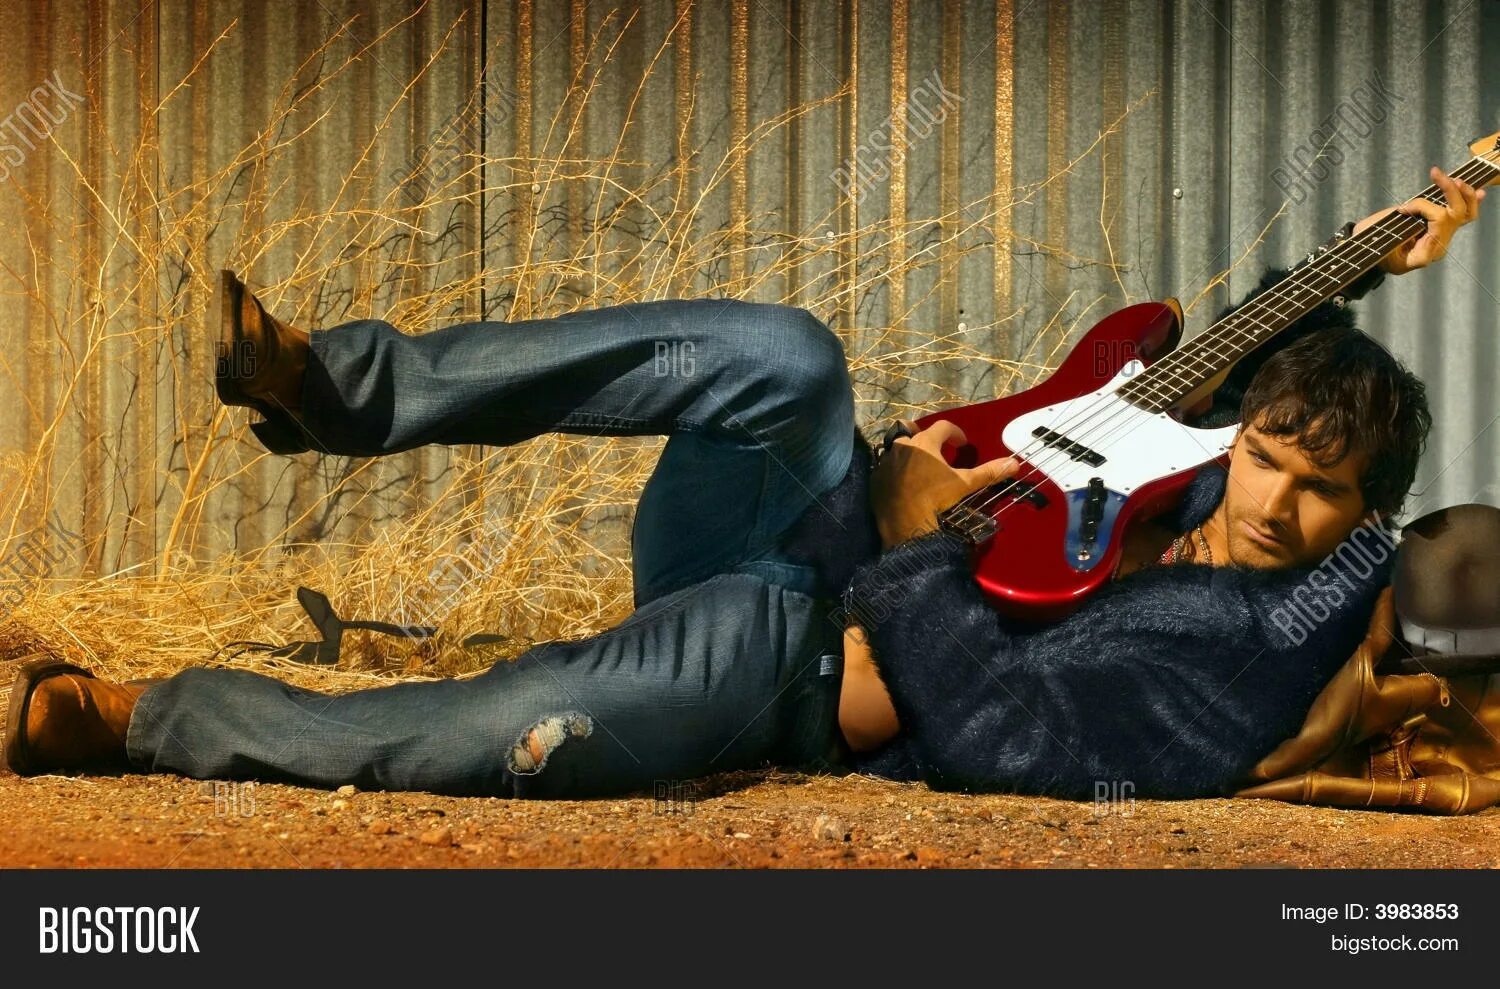 Клипы про мужчин. Человек с гитарой. Человек с электрогитарой. Мужчина с гитарой лежит. Человек с гитарой фото.